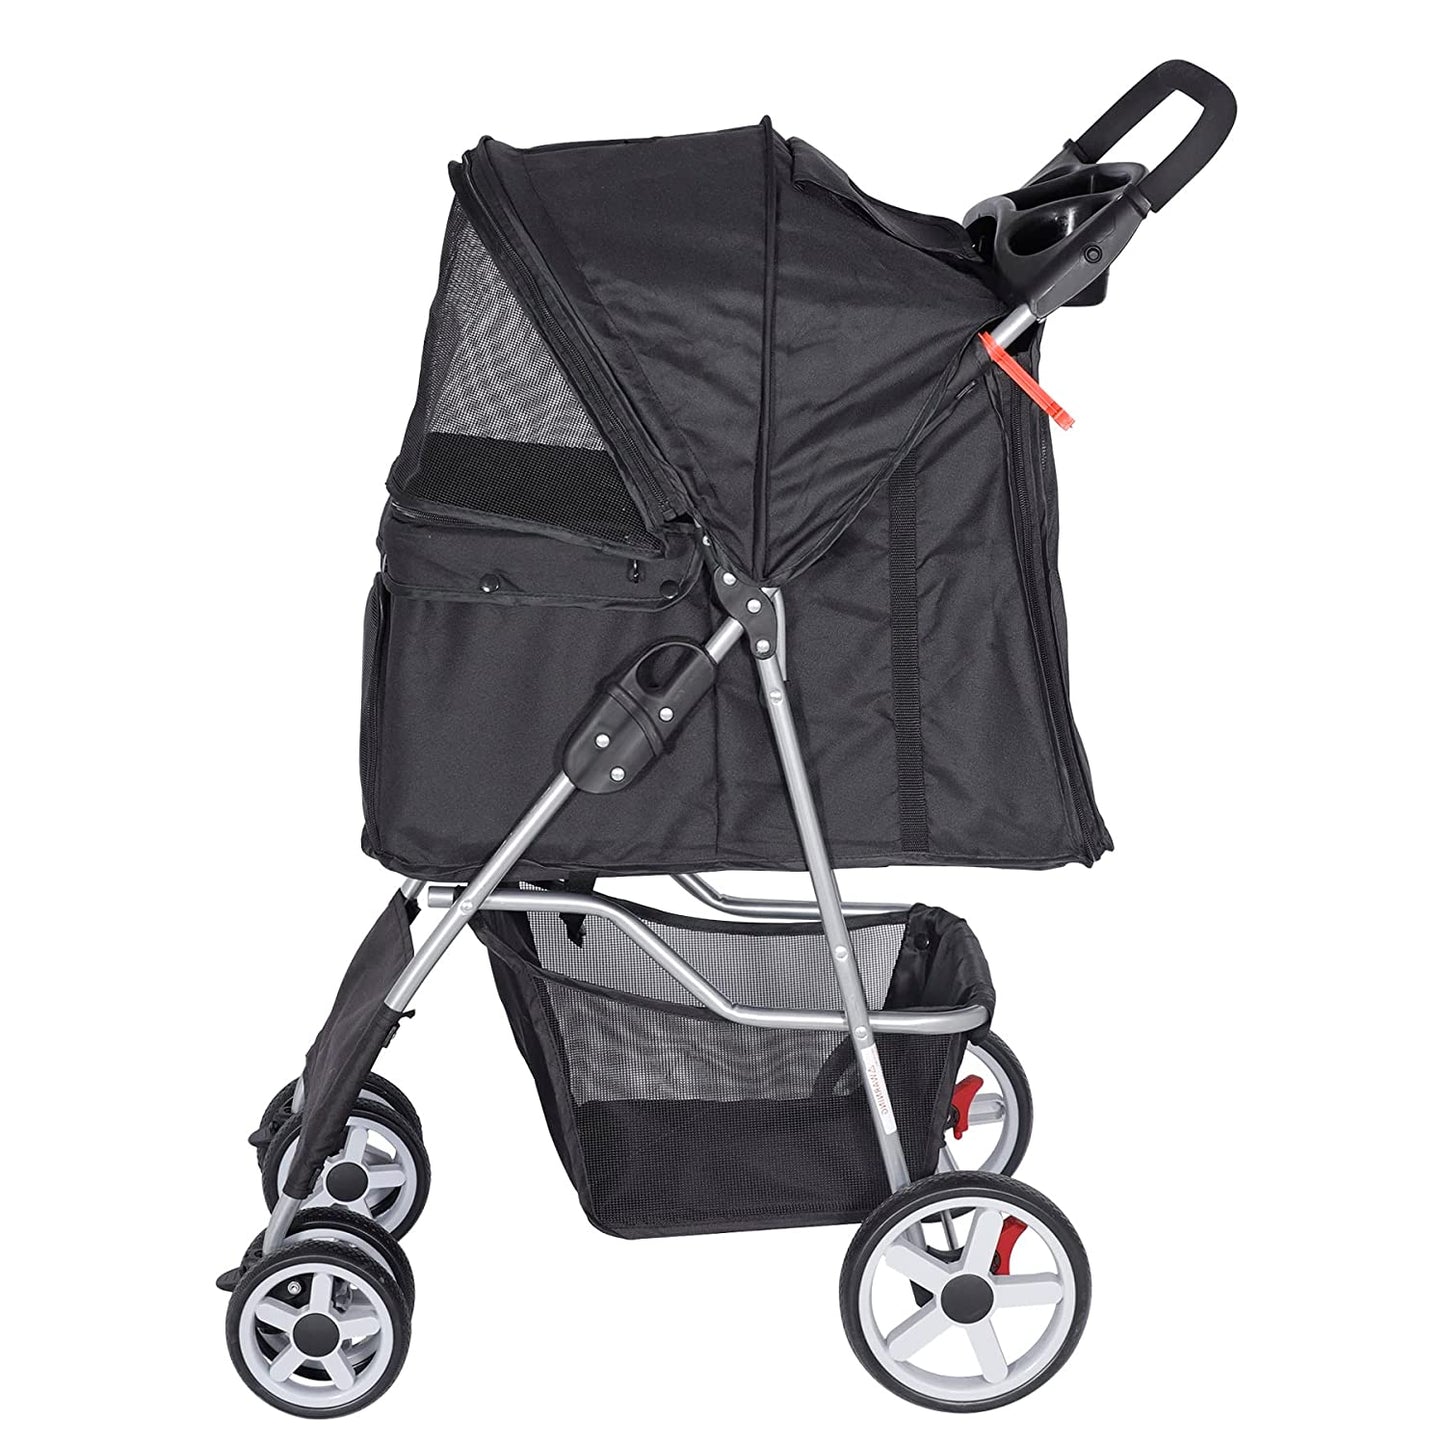 Foldable Pet Stroller, Cat/Dog Stroller with 4 Wheel, Pet Travel Carrier Strolling Cart with Storage Basket, Cup Holder, Black